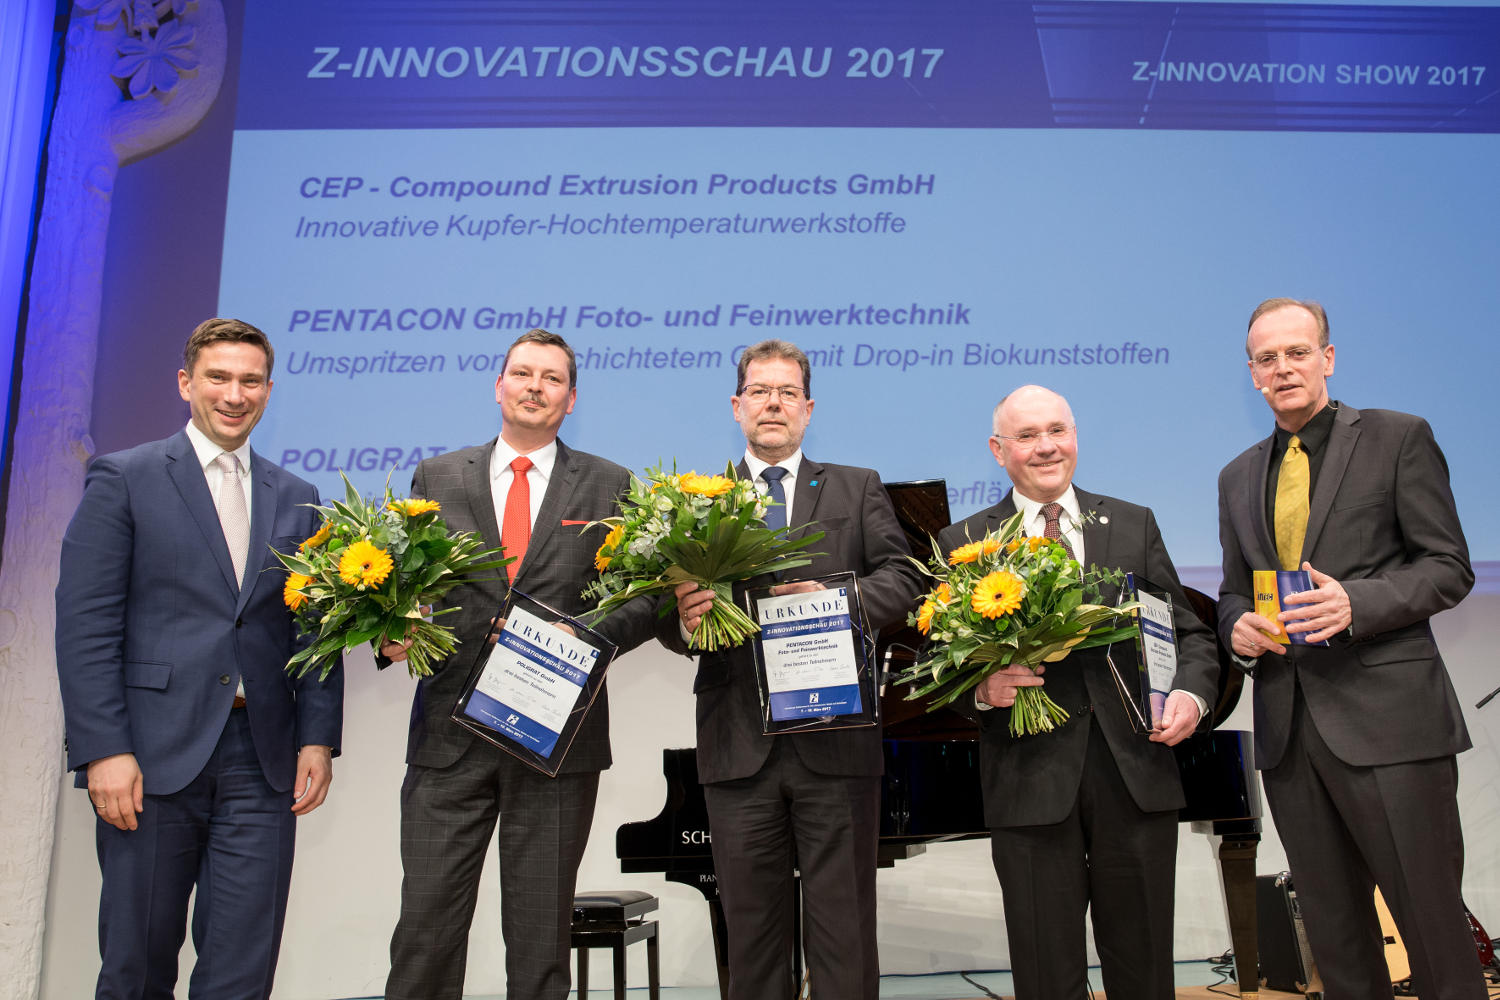 Auszeichnung Z-Innovationsschau: CEP Compound Extrusion Products GmbH, PENTACON GmbH und POLIGRAT GmbH | Foto: Leipziger Messe GmbH / Uwe Frauendorf